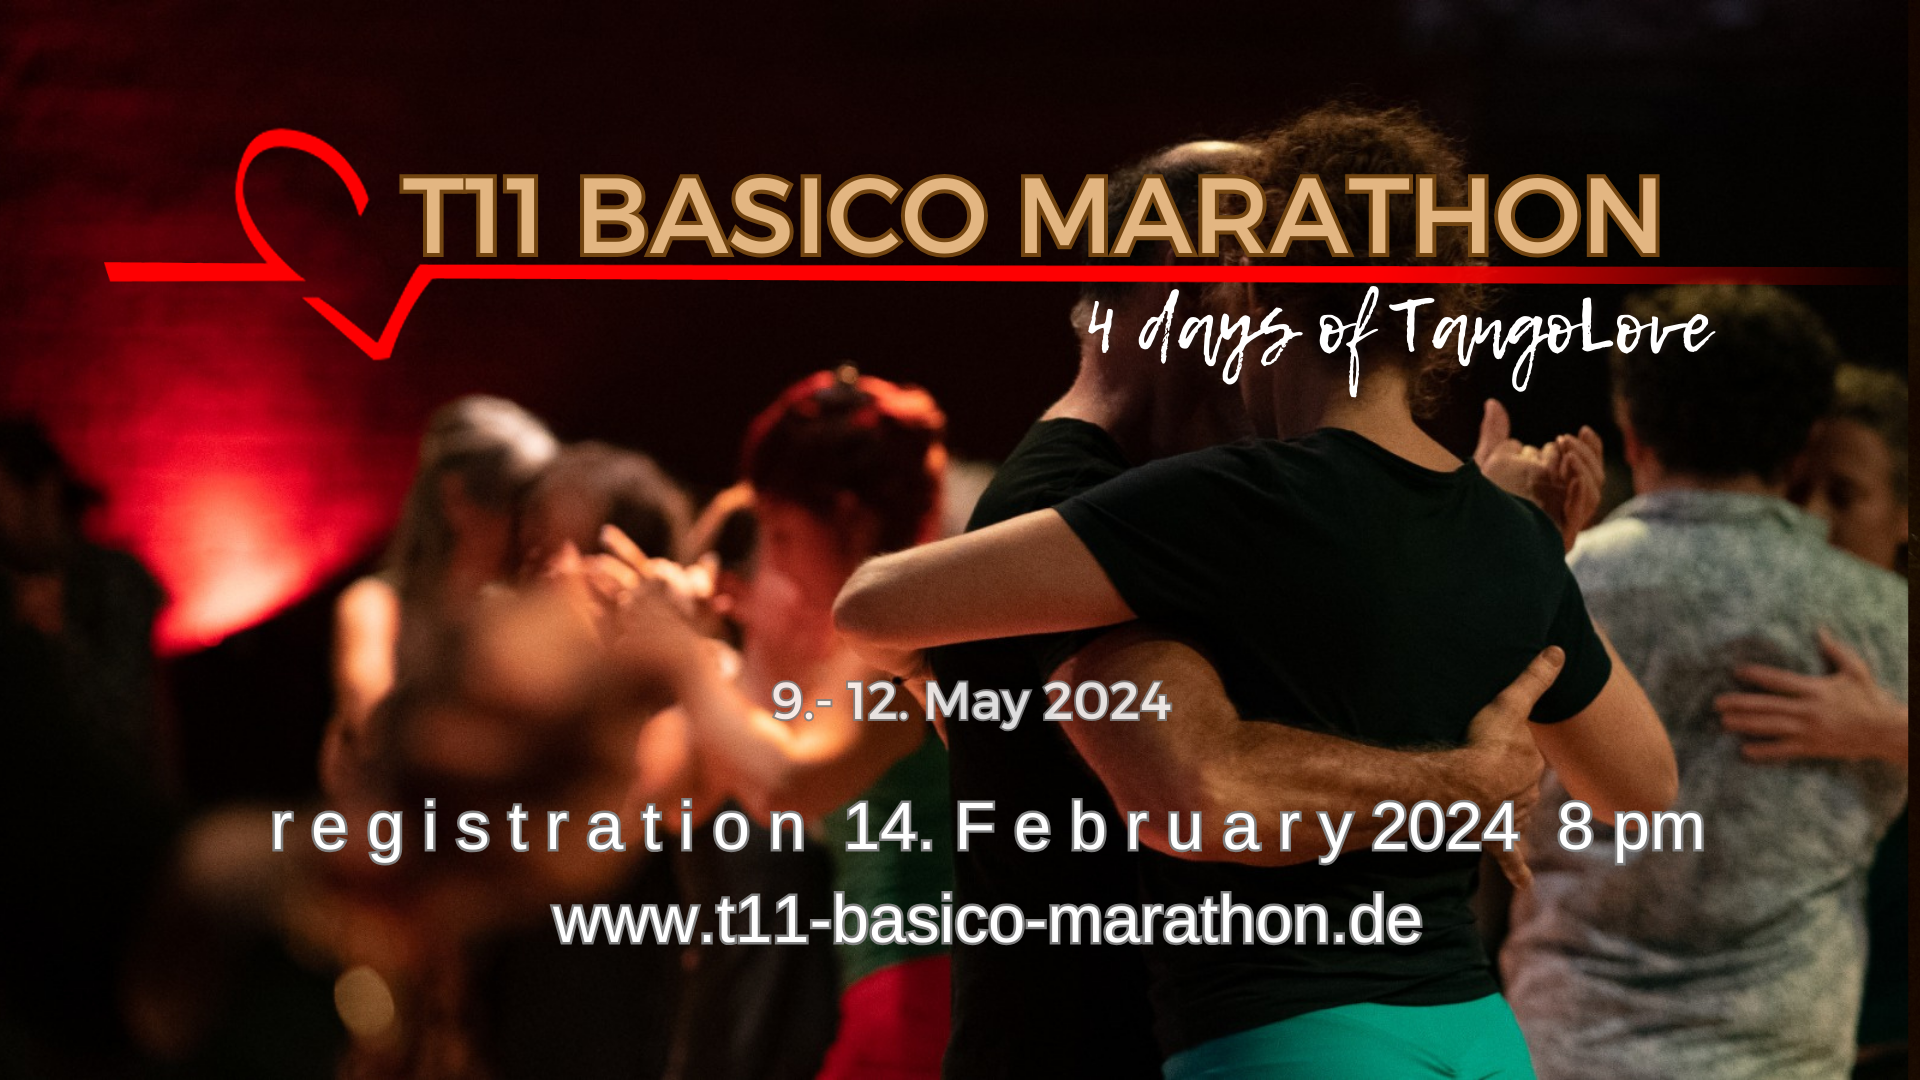 (c) T11-basico-marathon.de